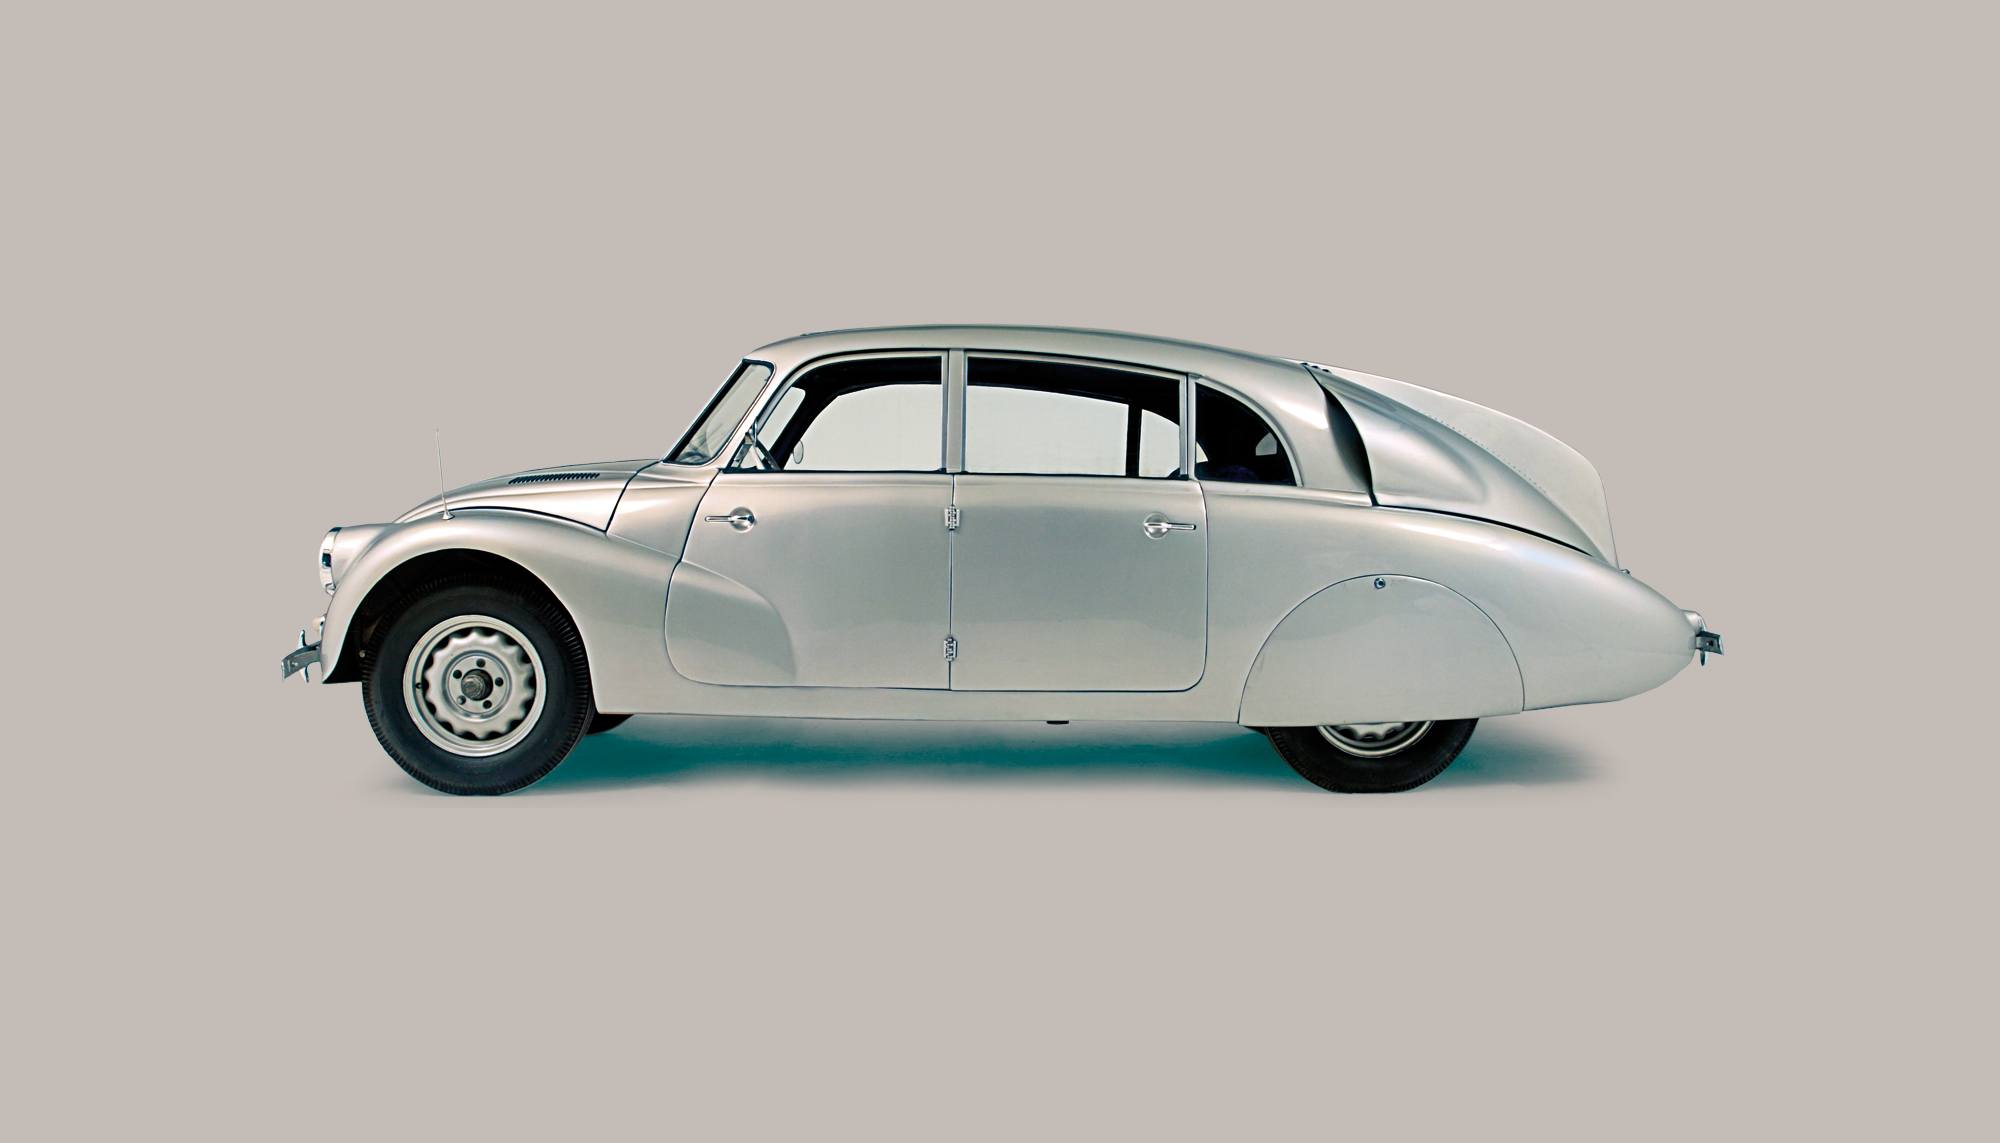 Bekijk Tatra 87 in het Louwman Museum